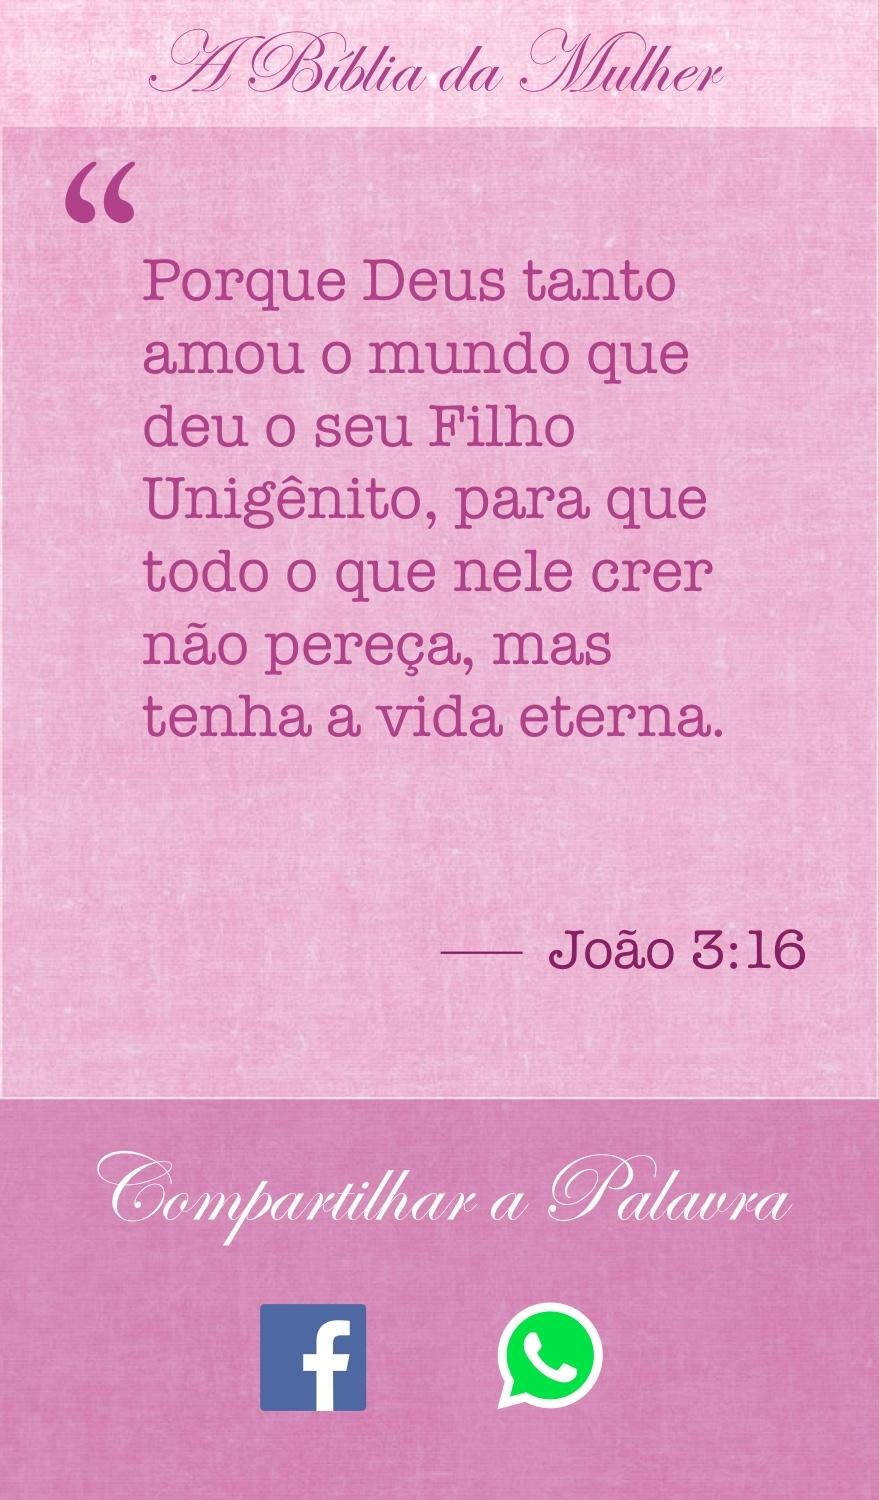 Android application Bíblia Diária da Mulher screenshort